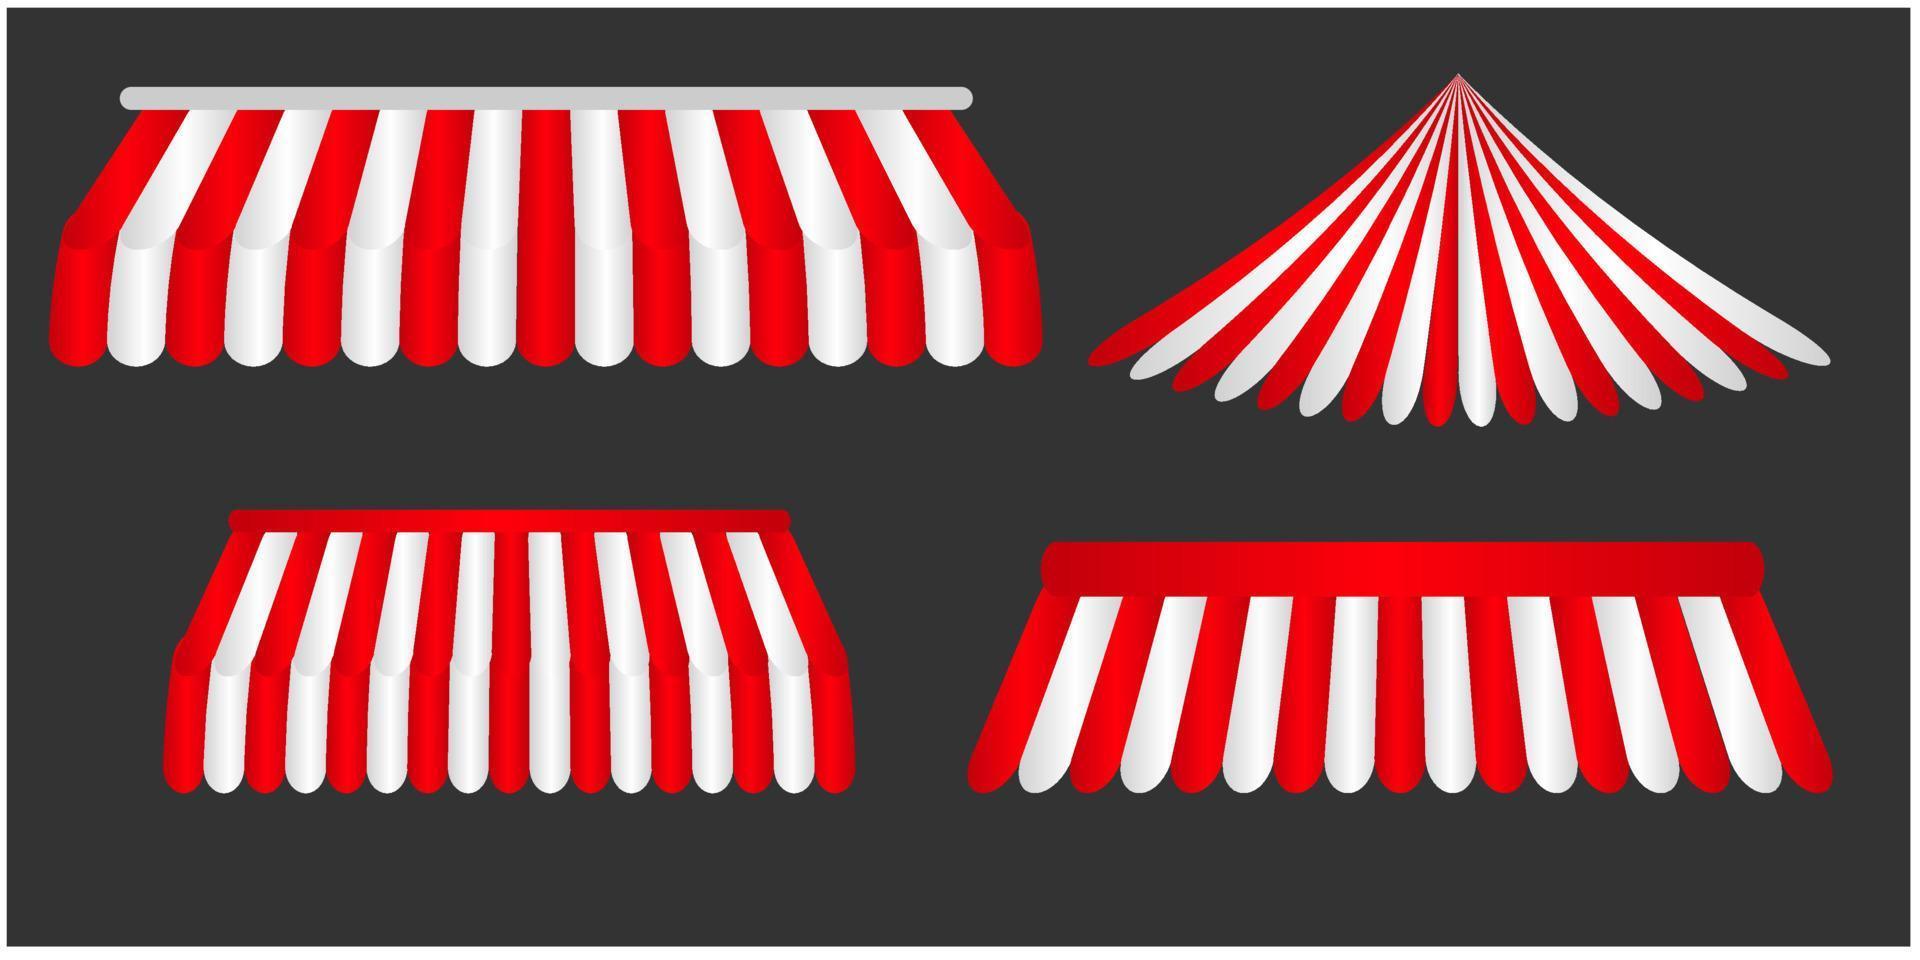 röd och vit randig markis uppsättning mall för affär, restaurang, kiosk, Kafé, attrapp på transparent bakgrund, vektor illustration.